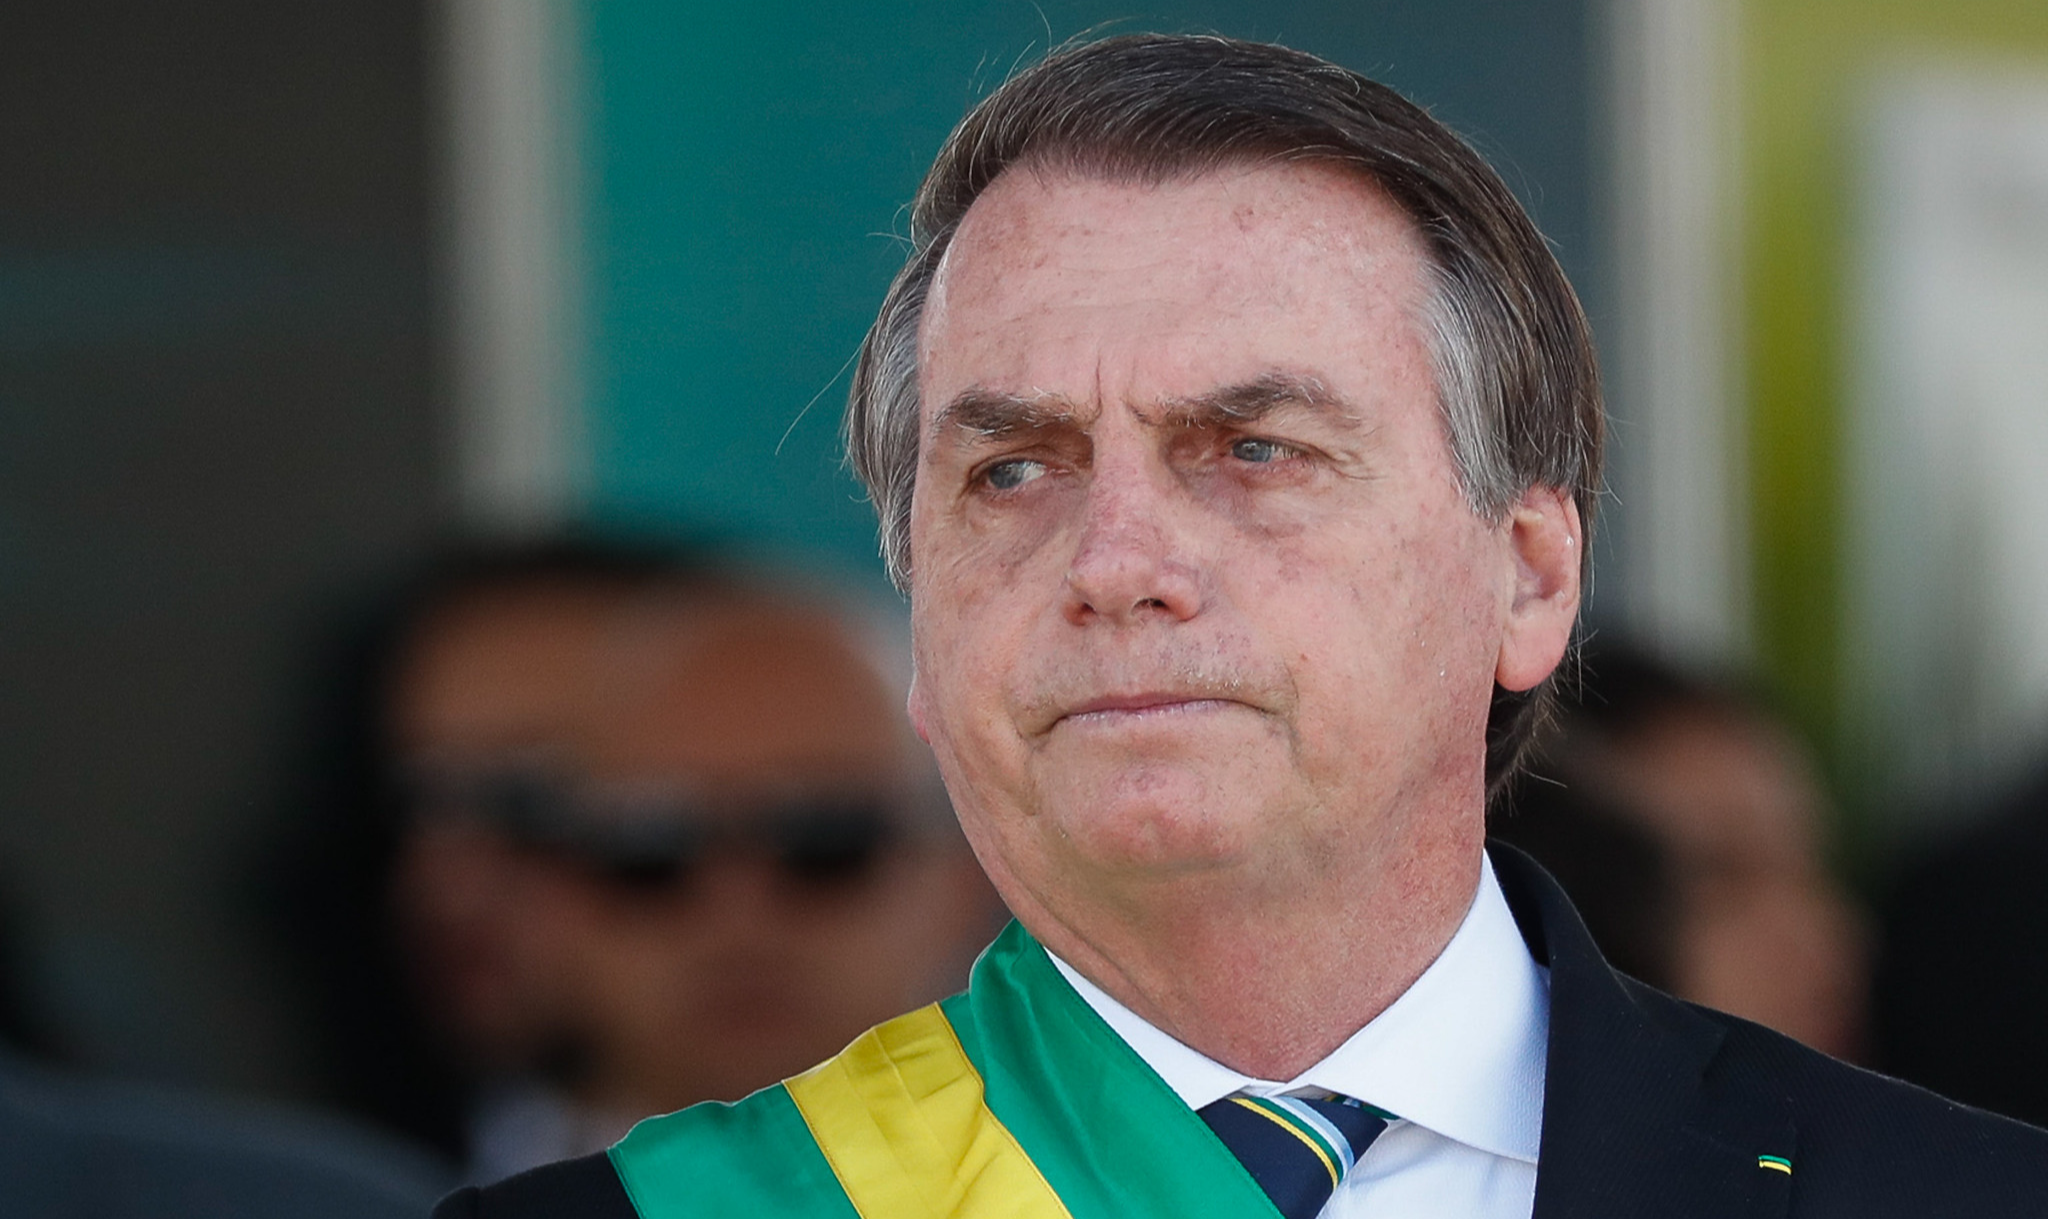 Ordem dos Advogados do Brasil ainda pediu que as Nações Unidas 'redobrem a atenção para esse grave retrocesso institucional no Brasil'